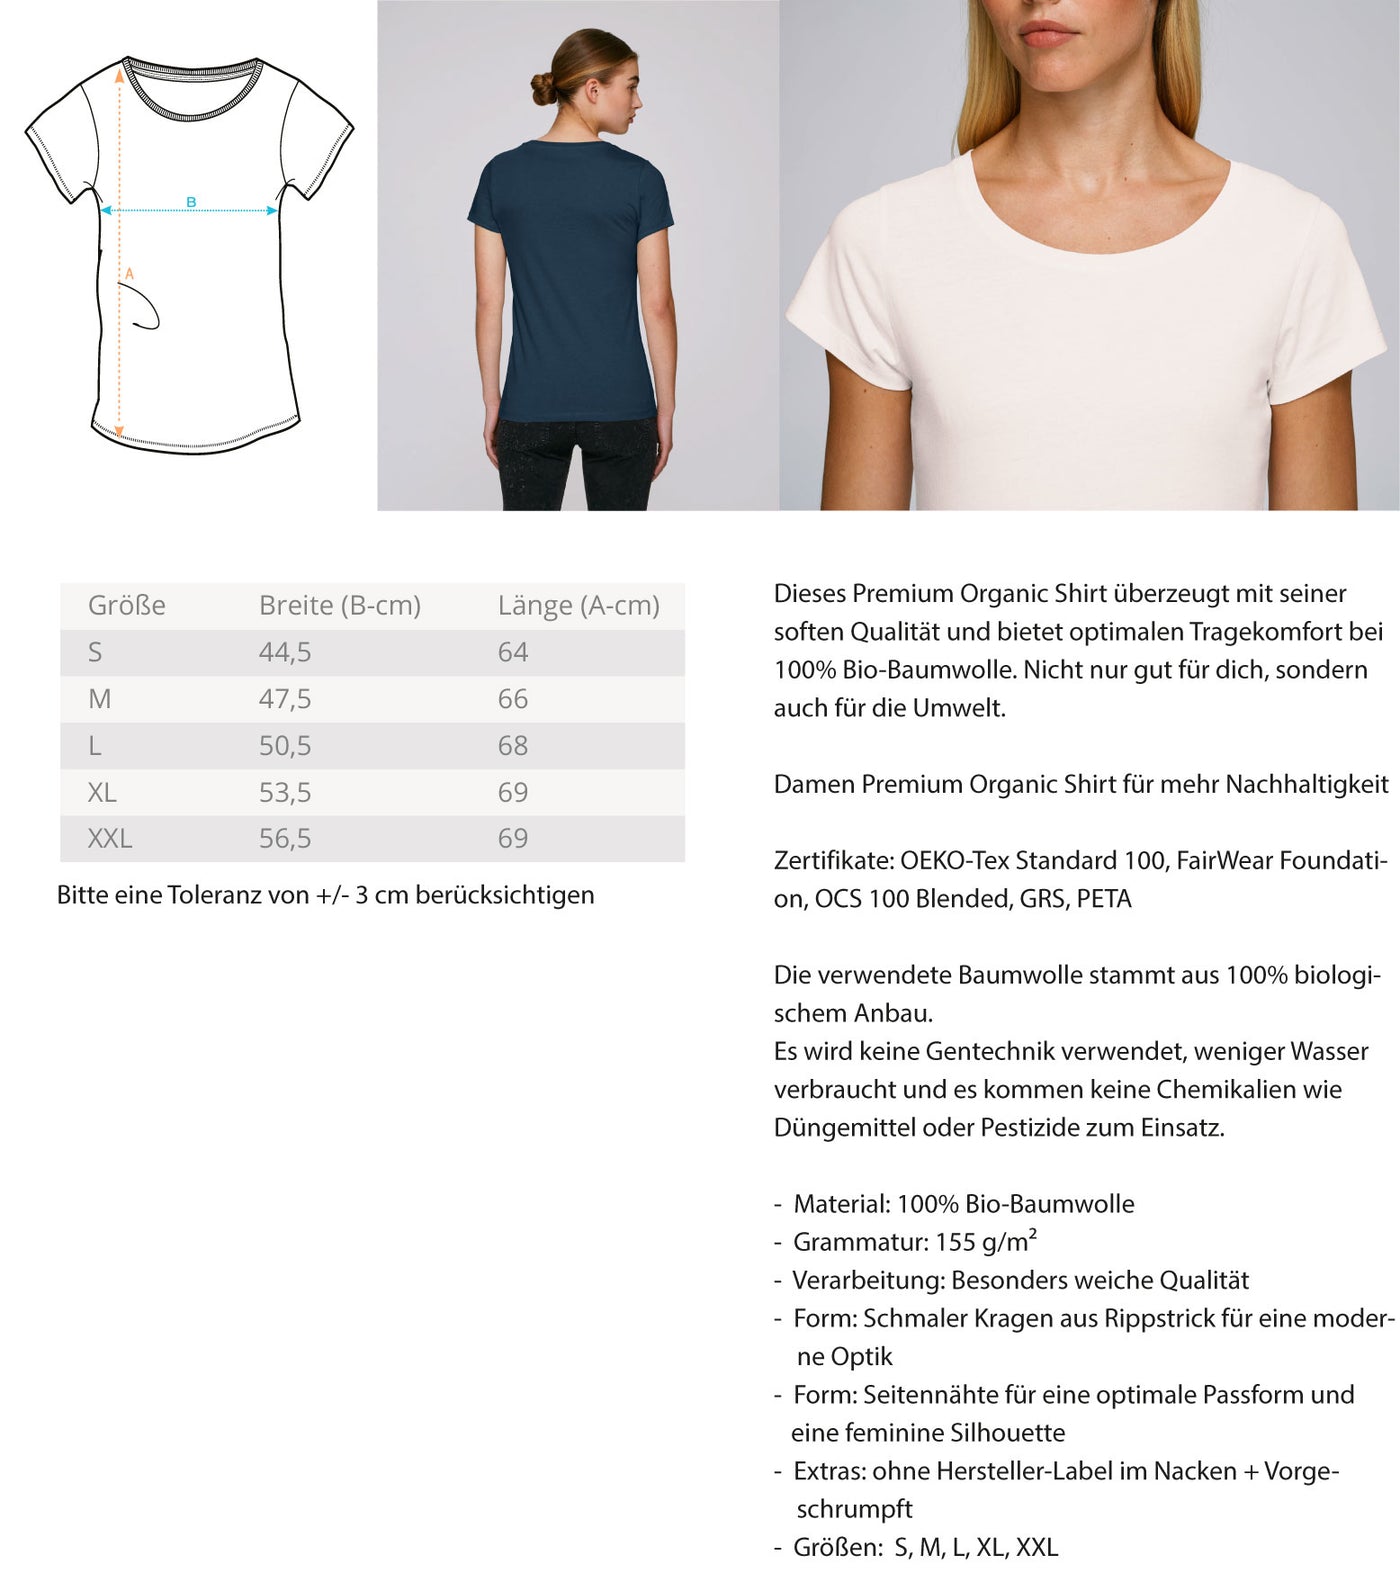 Evolution Wandermensch - Damen Premium Organic T-Shirt wandern